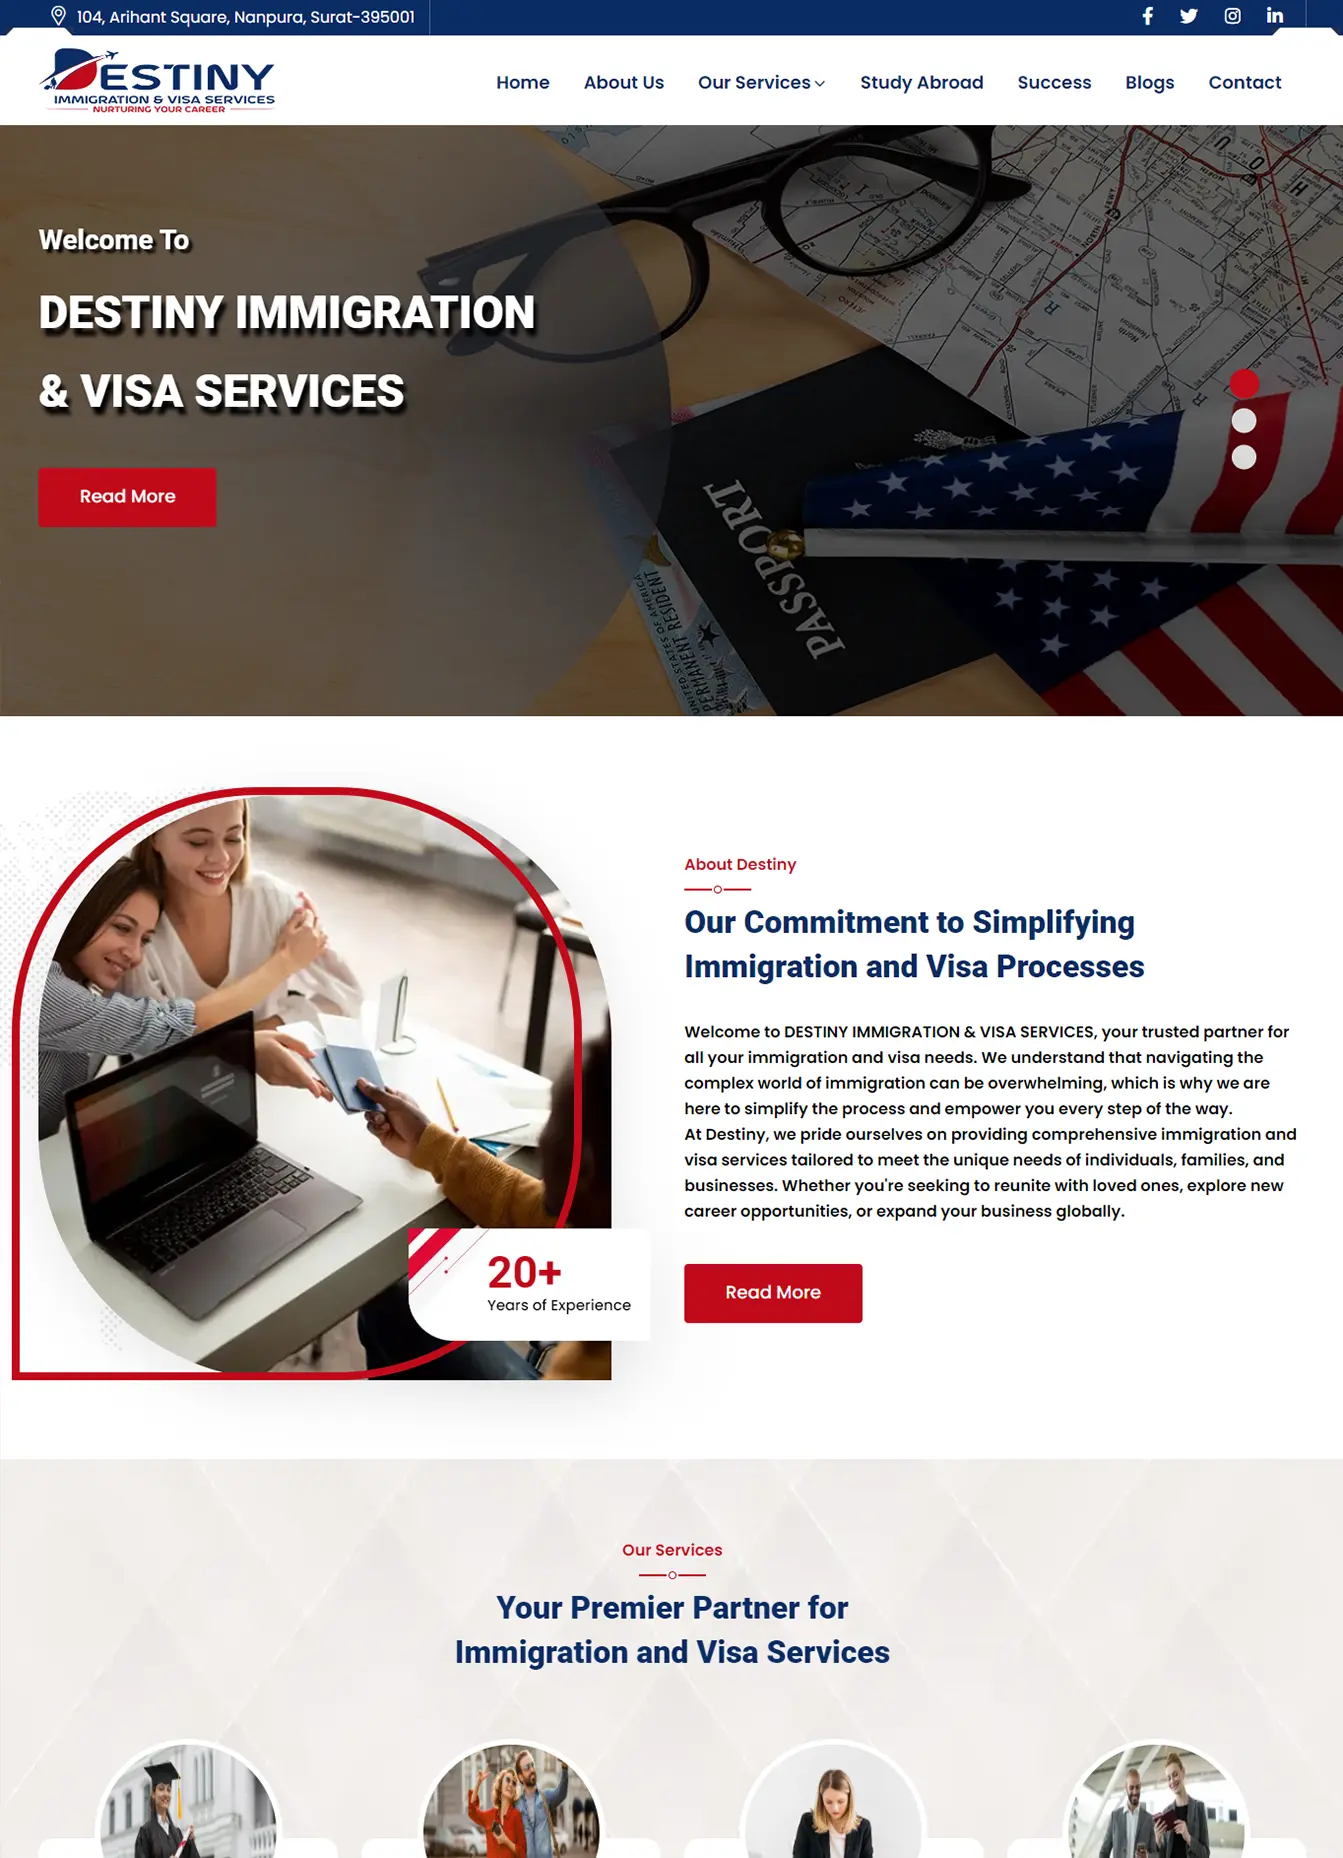 Destiny Immigration - Portfolio Website